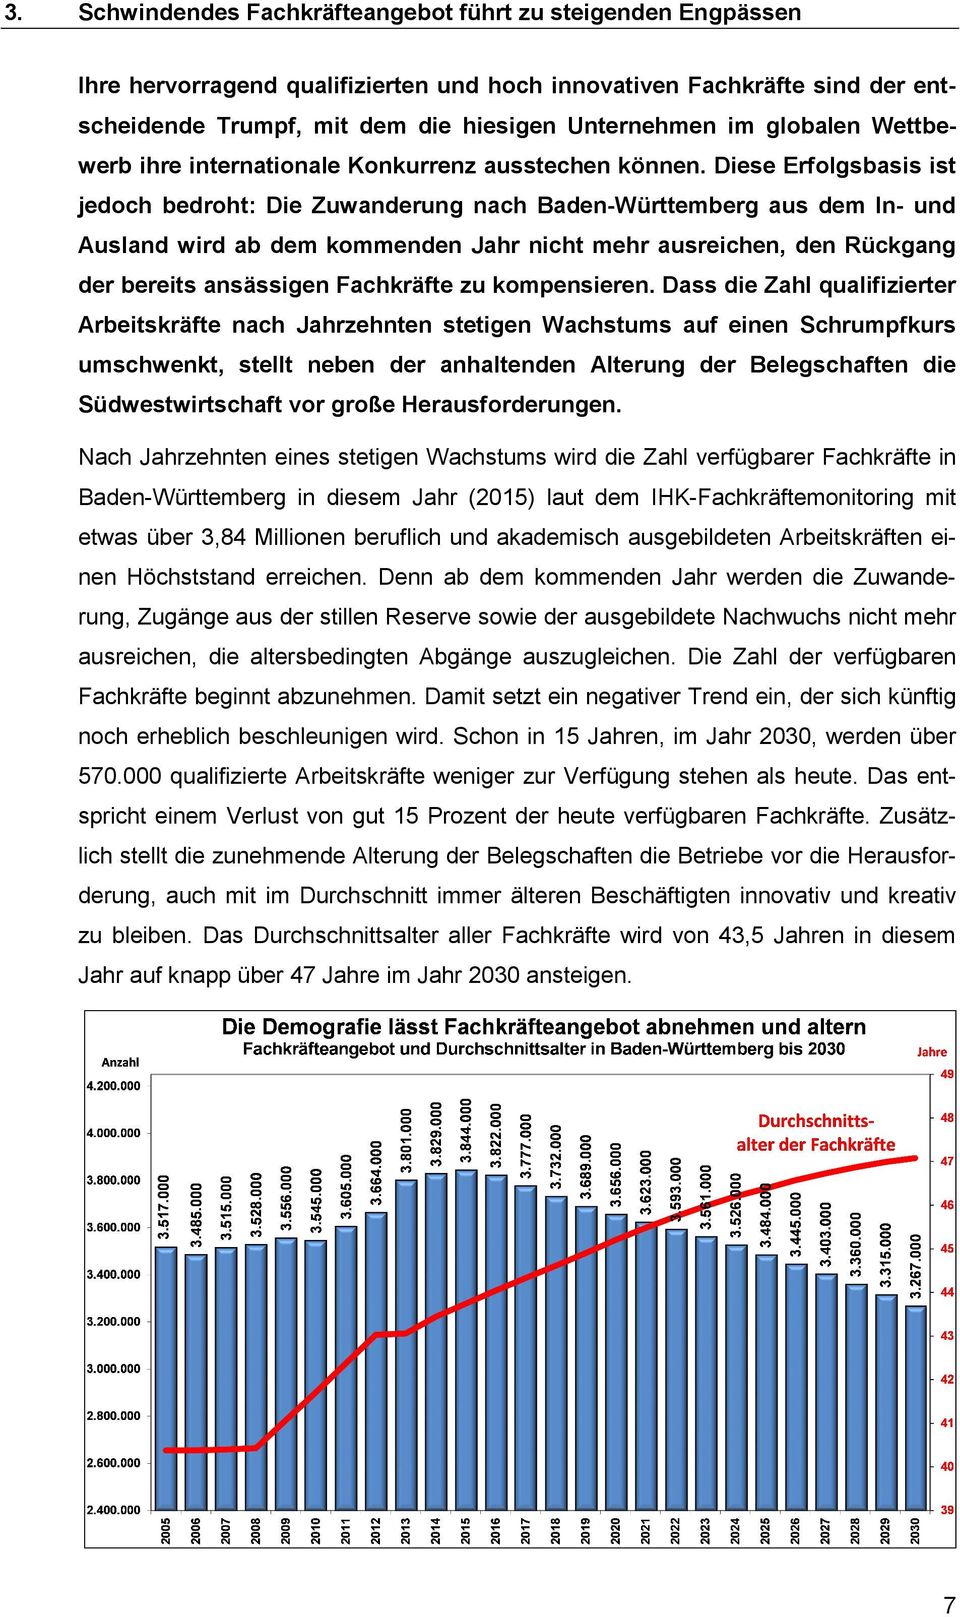 Diese Erfolgsbasis ist jedoch bedroht: Die Zuwanderung nach Baden-Württemberg aus dem In- und Ausland wird ab dem kommenden Jahr nicht mehr ausreichen, den Rückgang der bereits ansässigen Fachkräfte